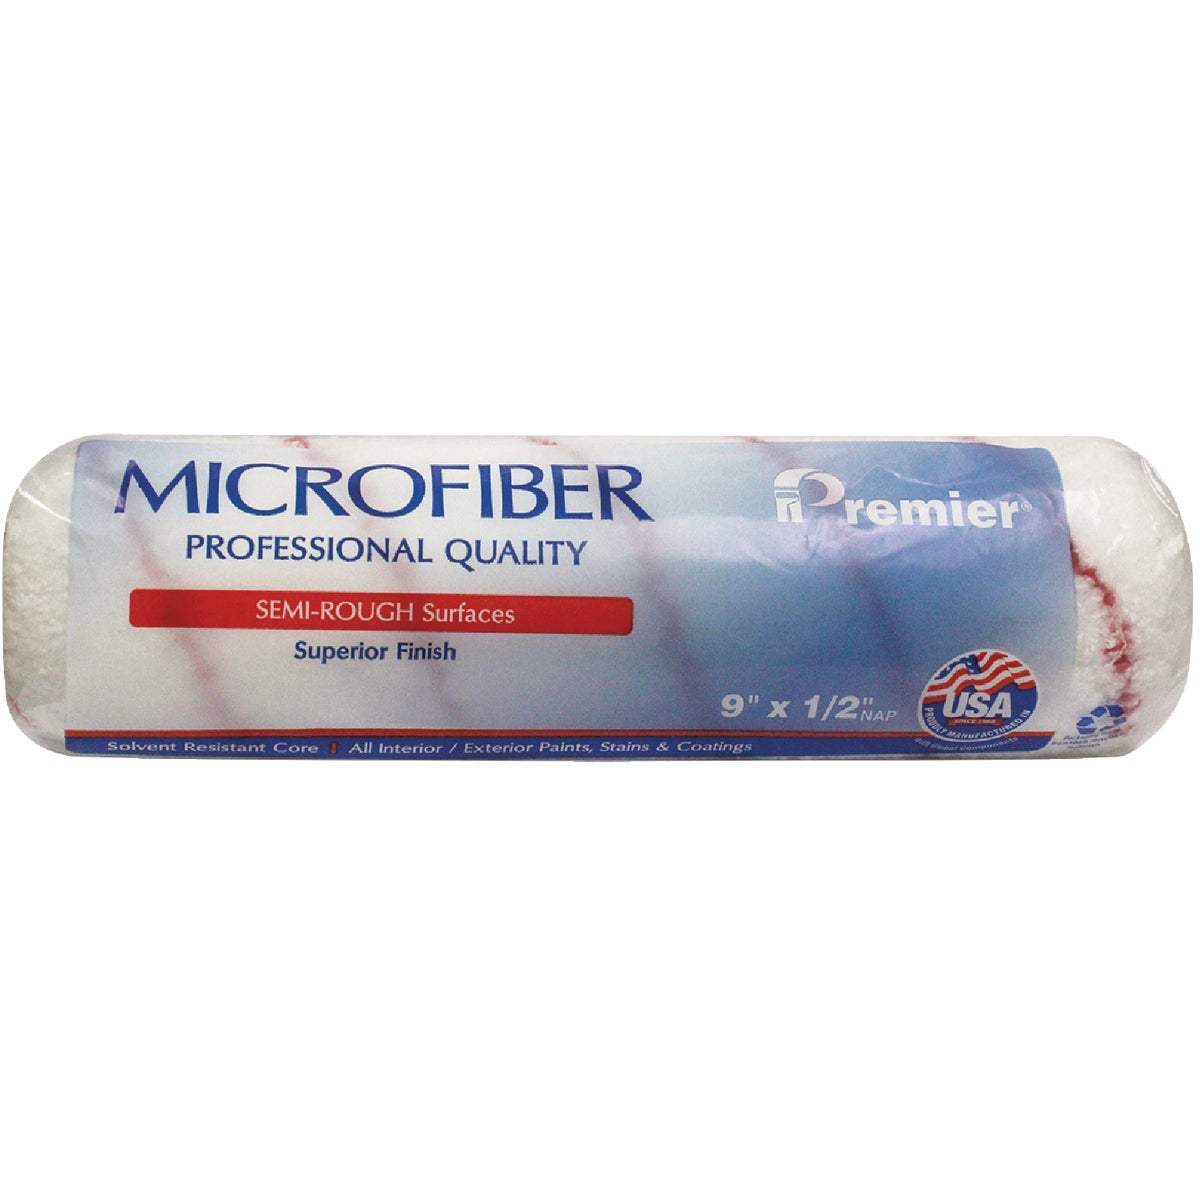 Premier 9 In. X 1/2 In. Microfiber Roller Cover